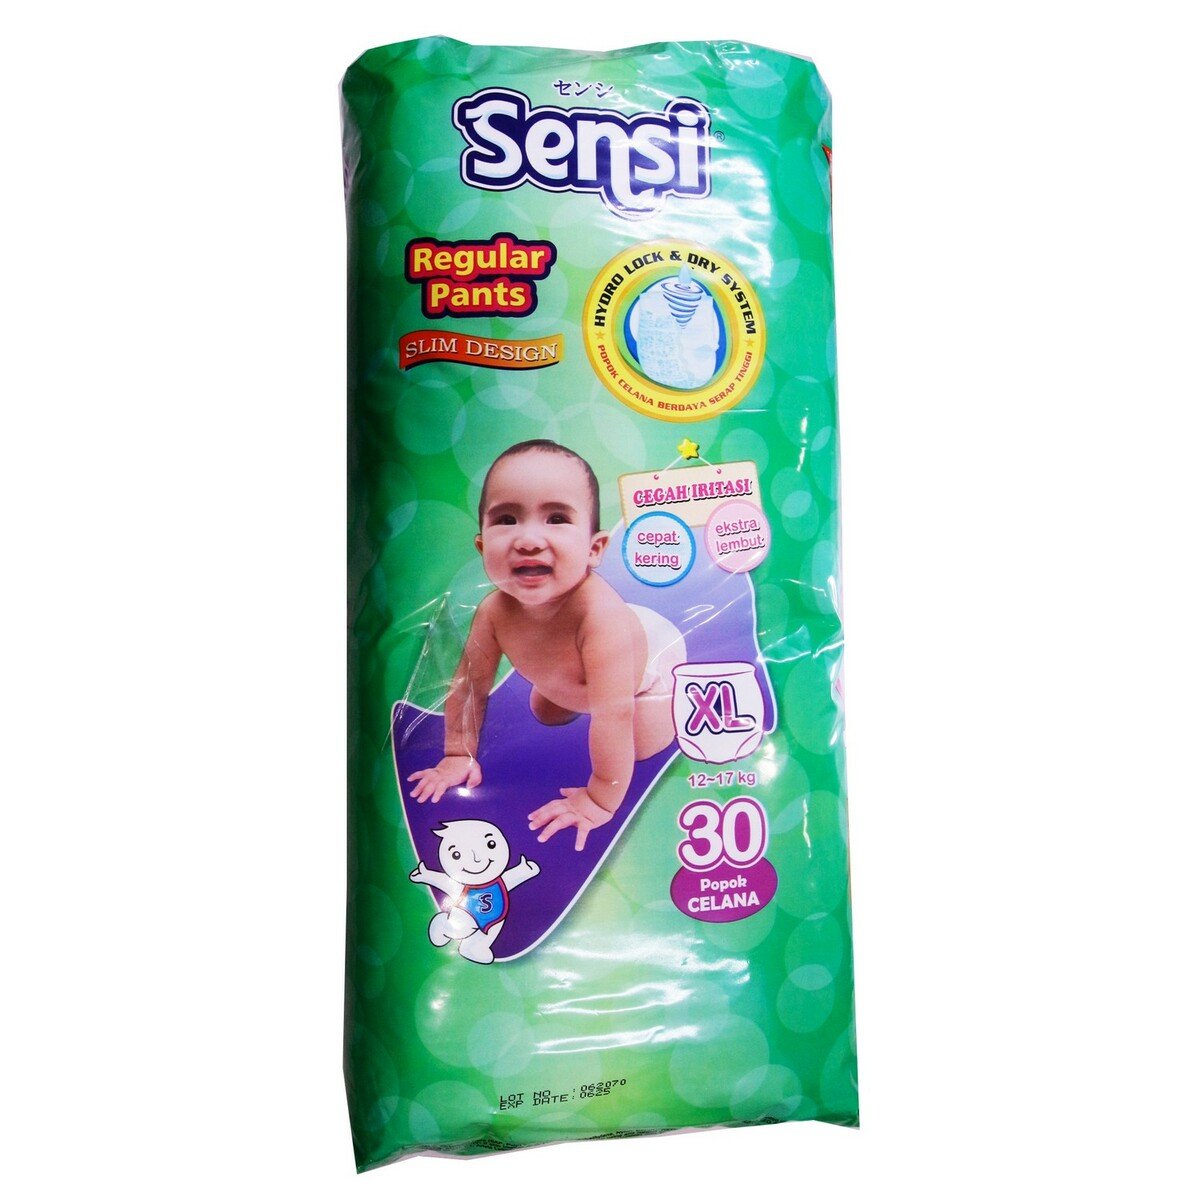 Sensi Baby Diaper Regular Pants XL30